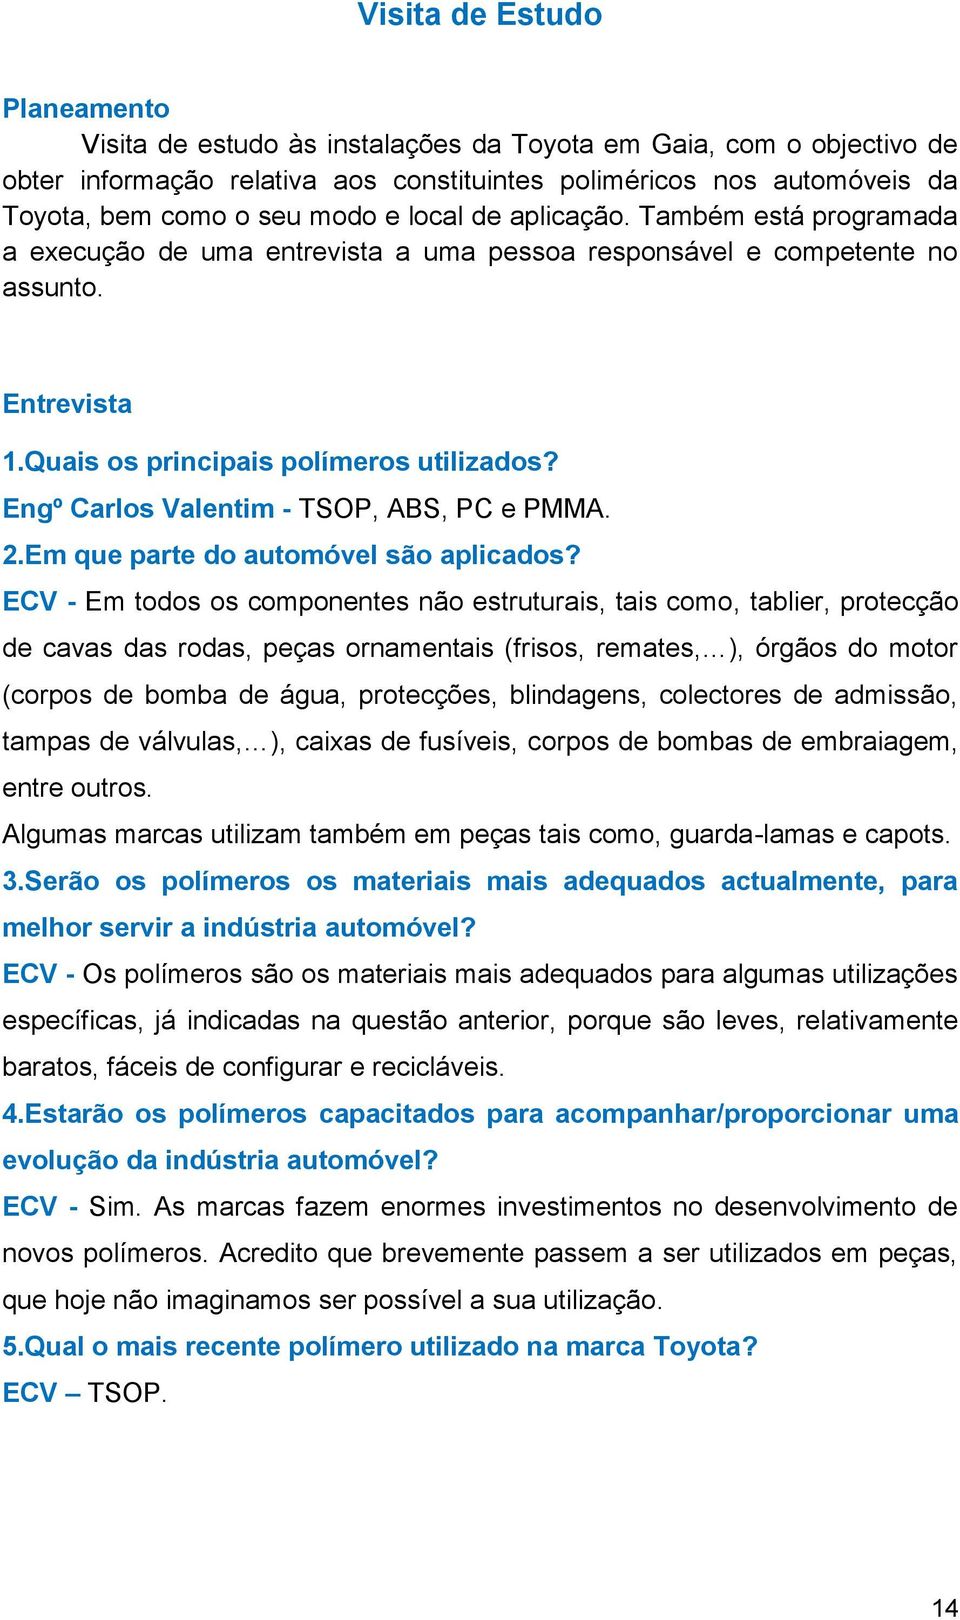 Engº Carlos Valentim - TSOP, ABS, PC e PMMA. 2.Em que parte do automóvel são aplicados?